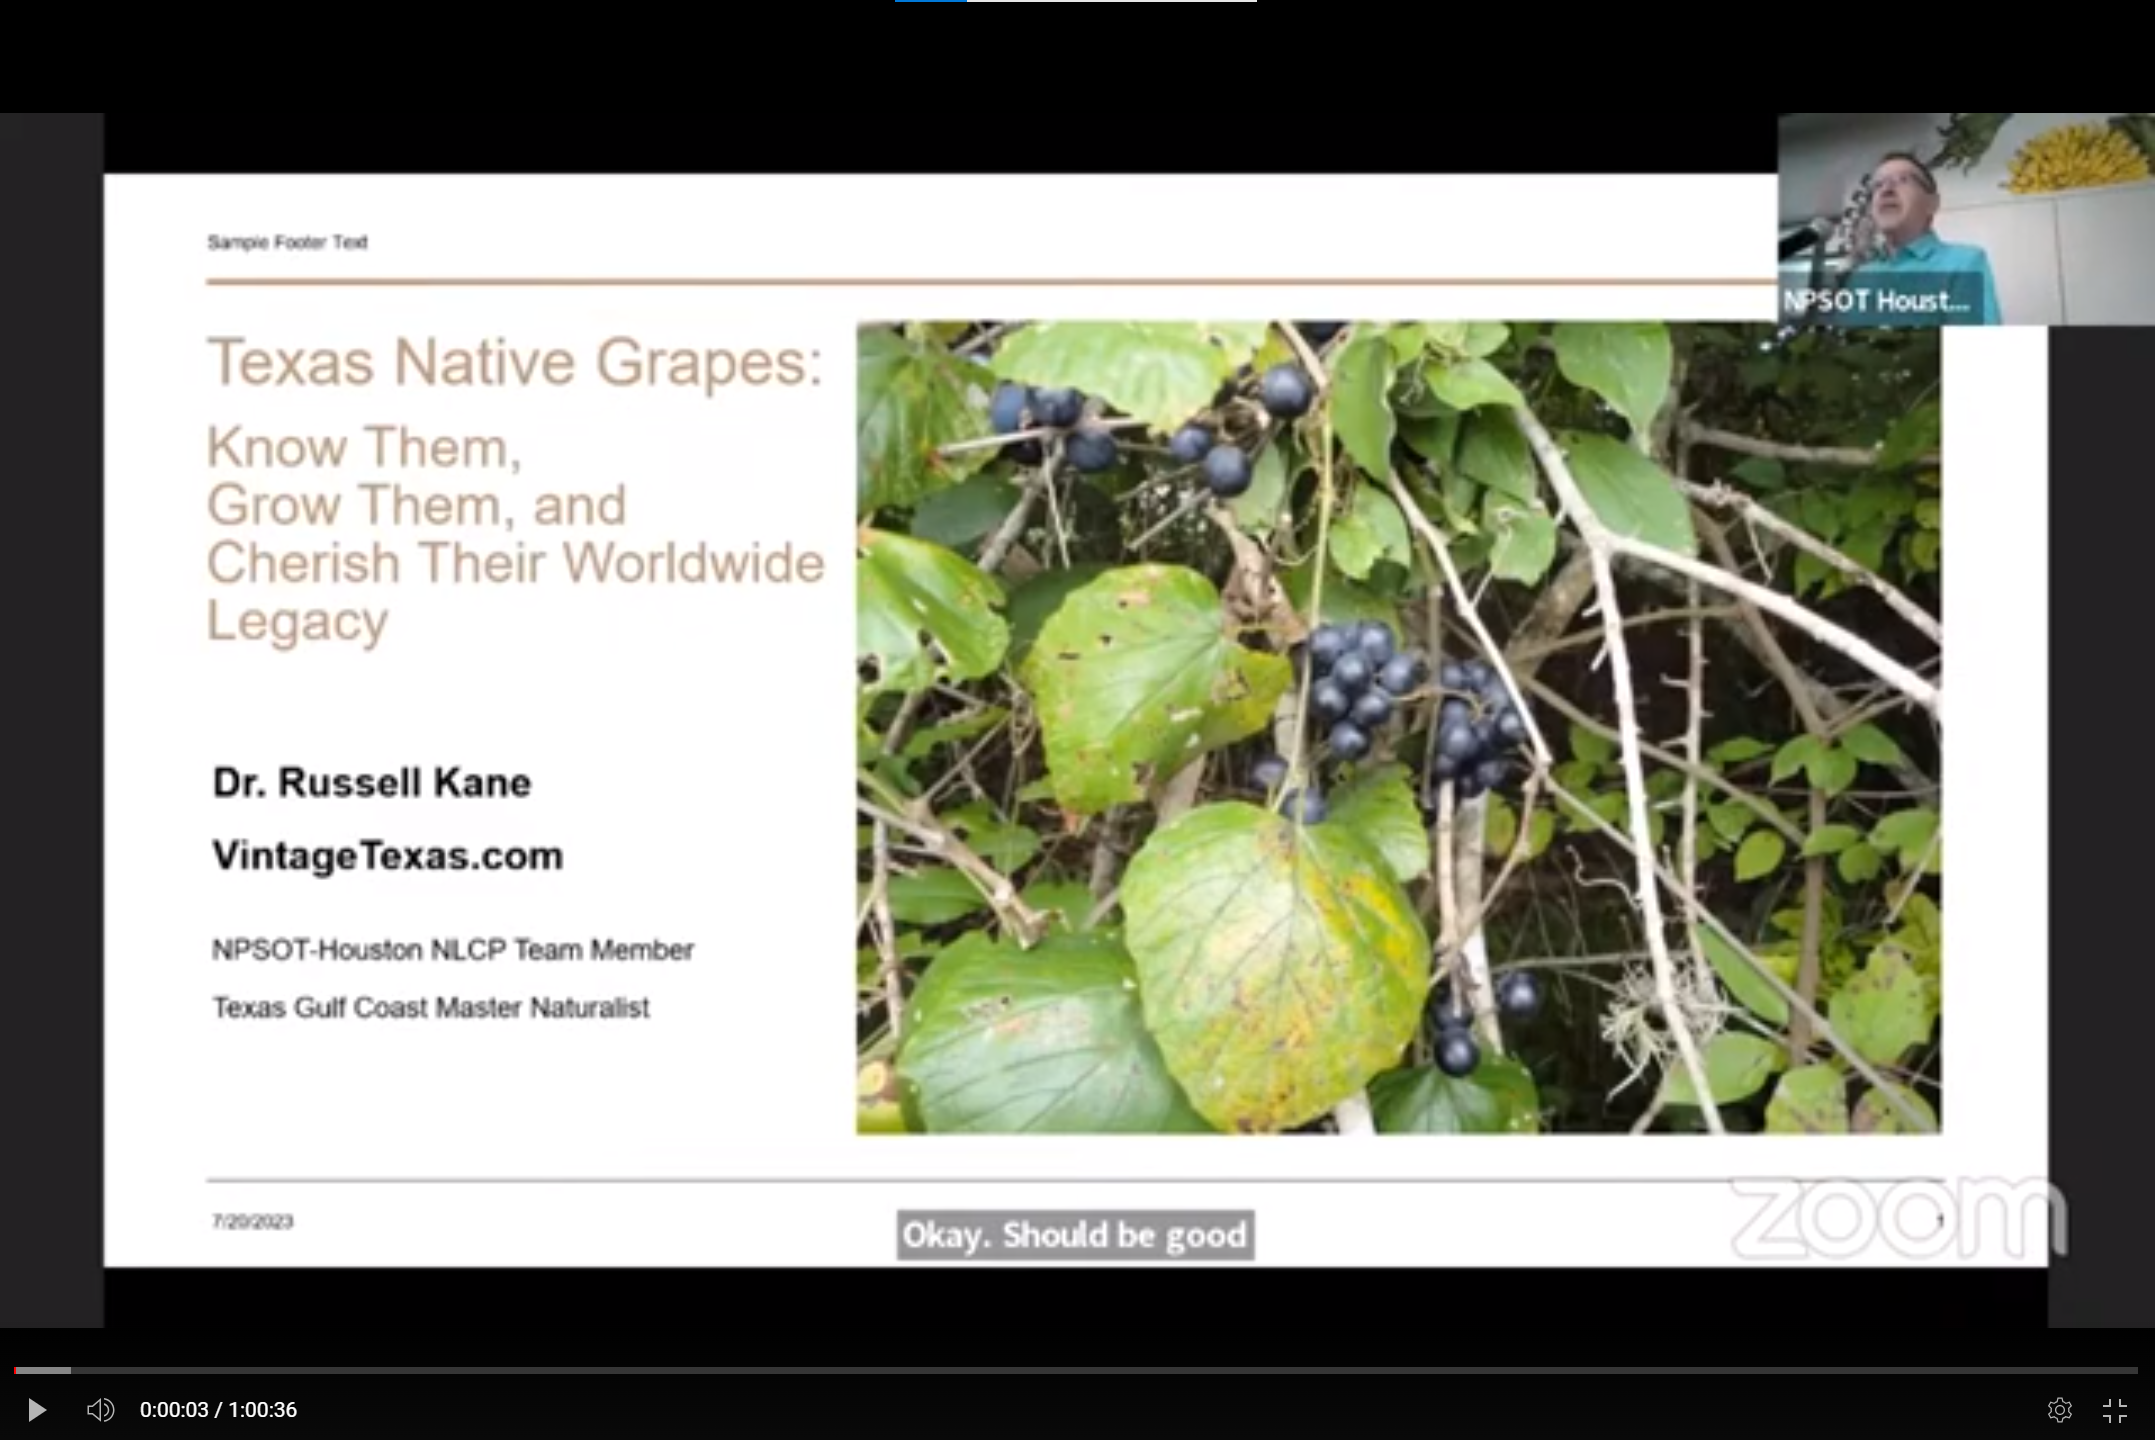 Texas Native Grapes